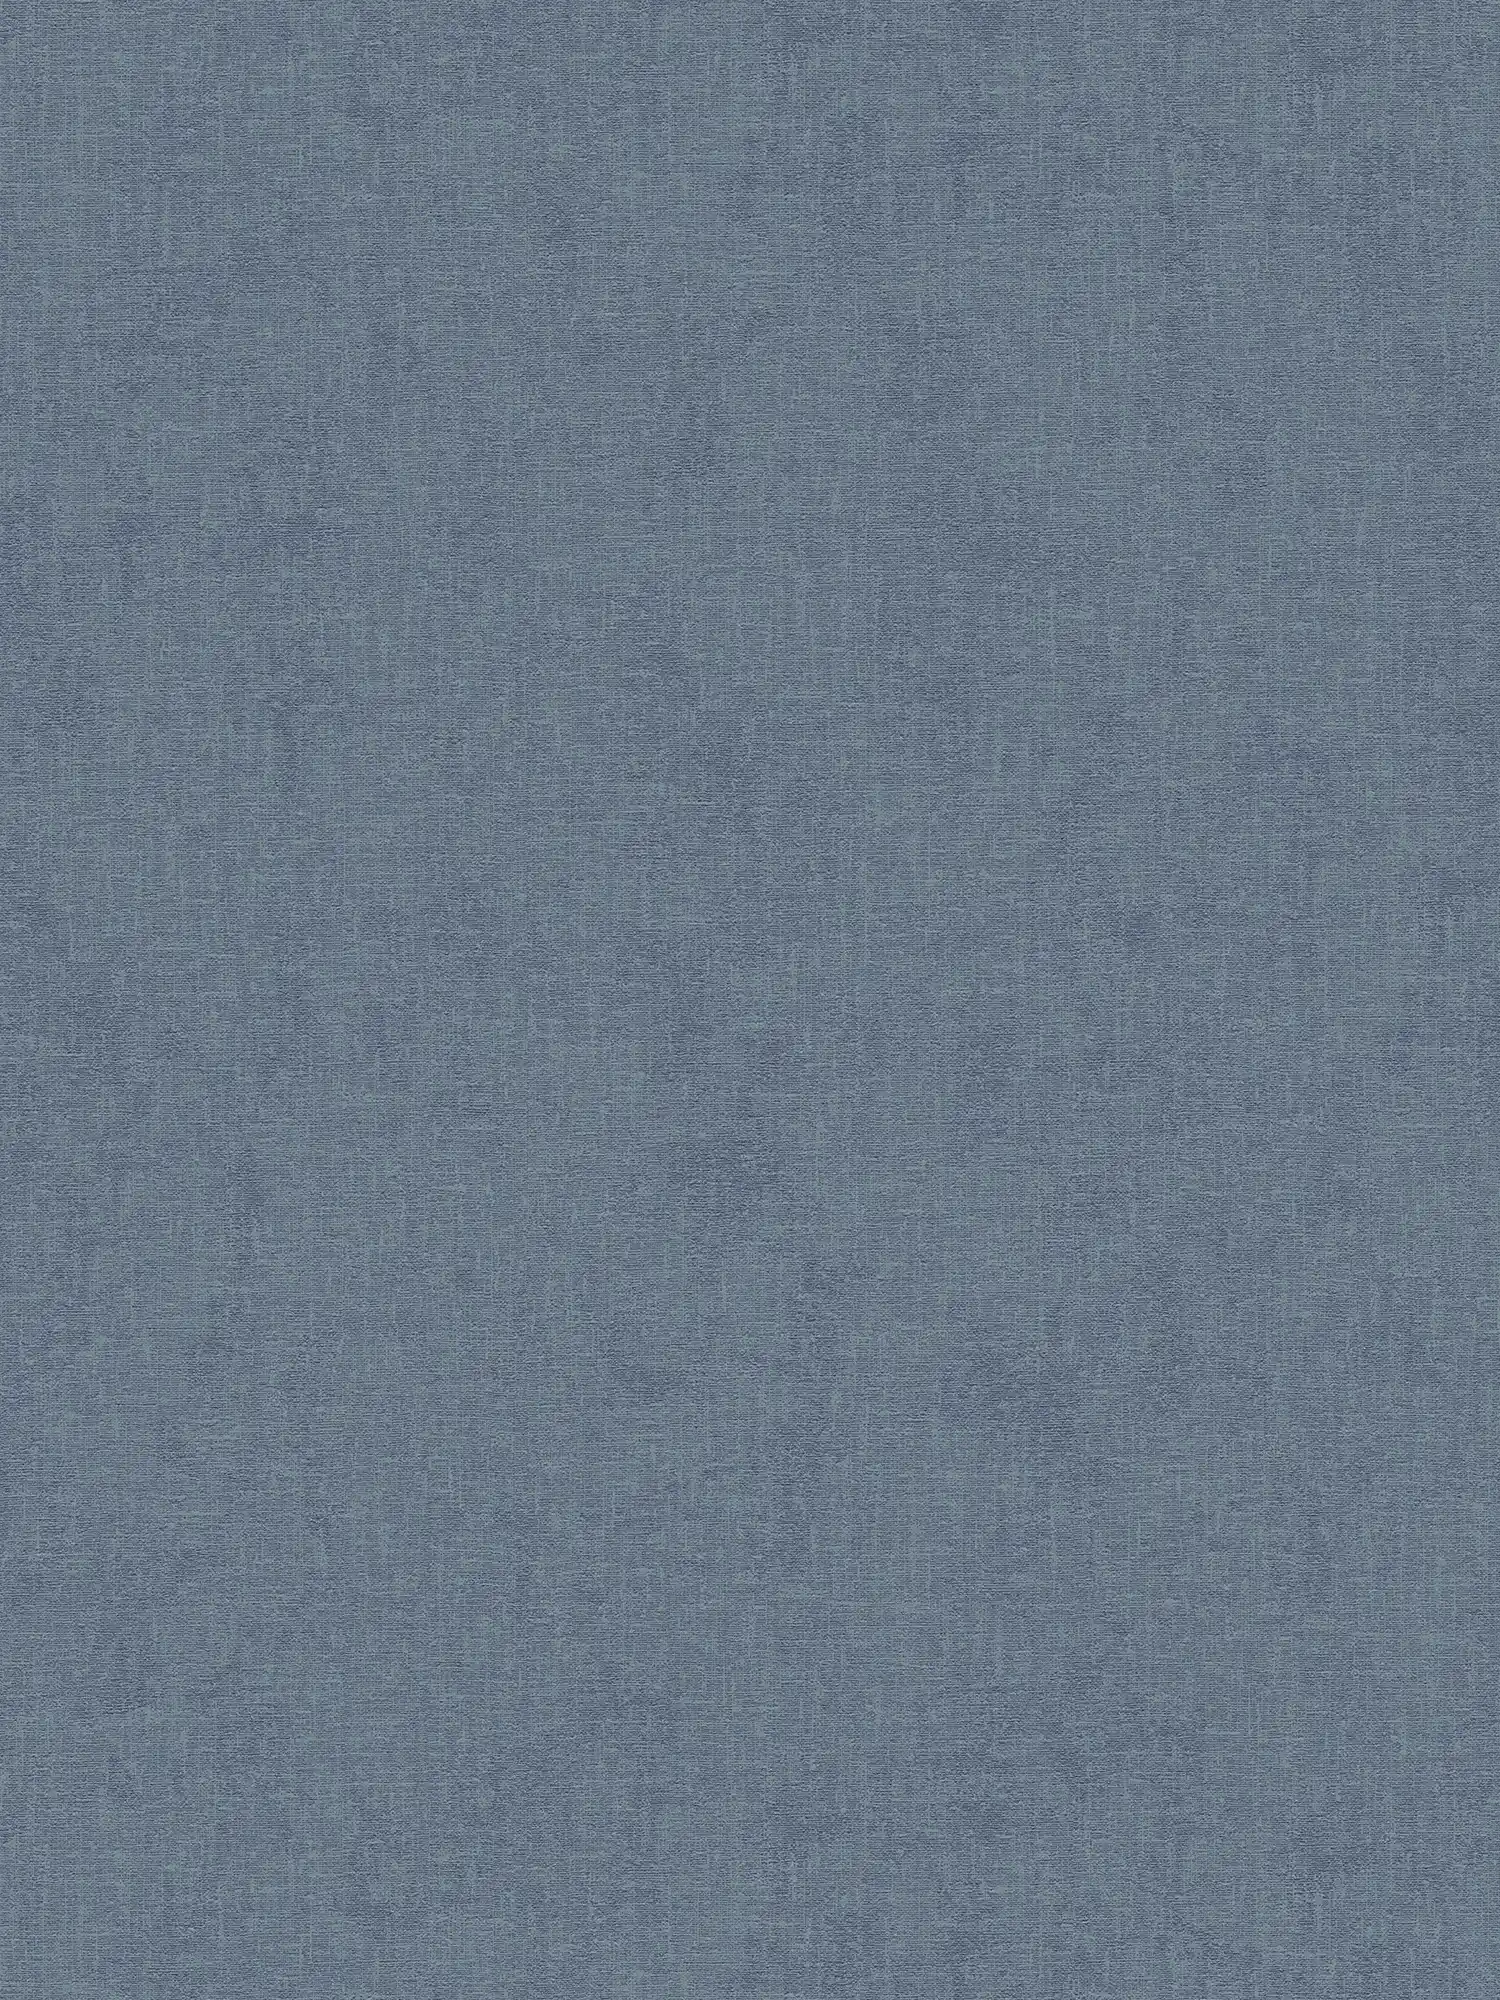 Eenheidsbehang gevlekt met textiel look - blauw
